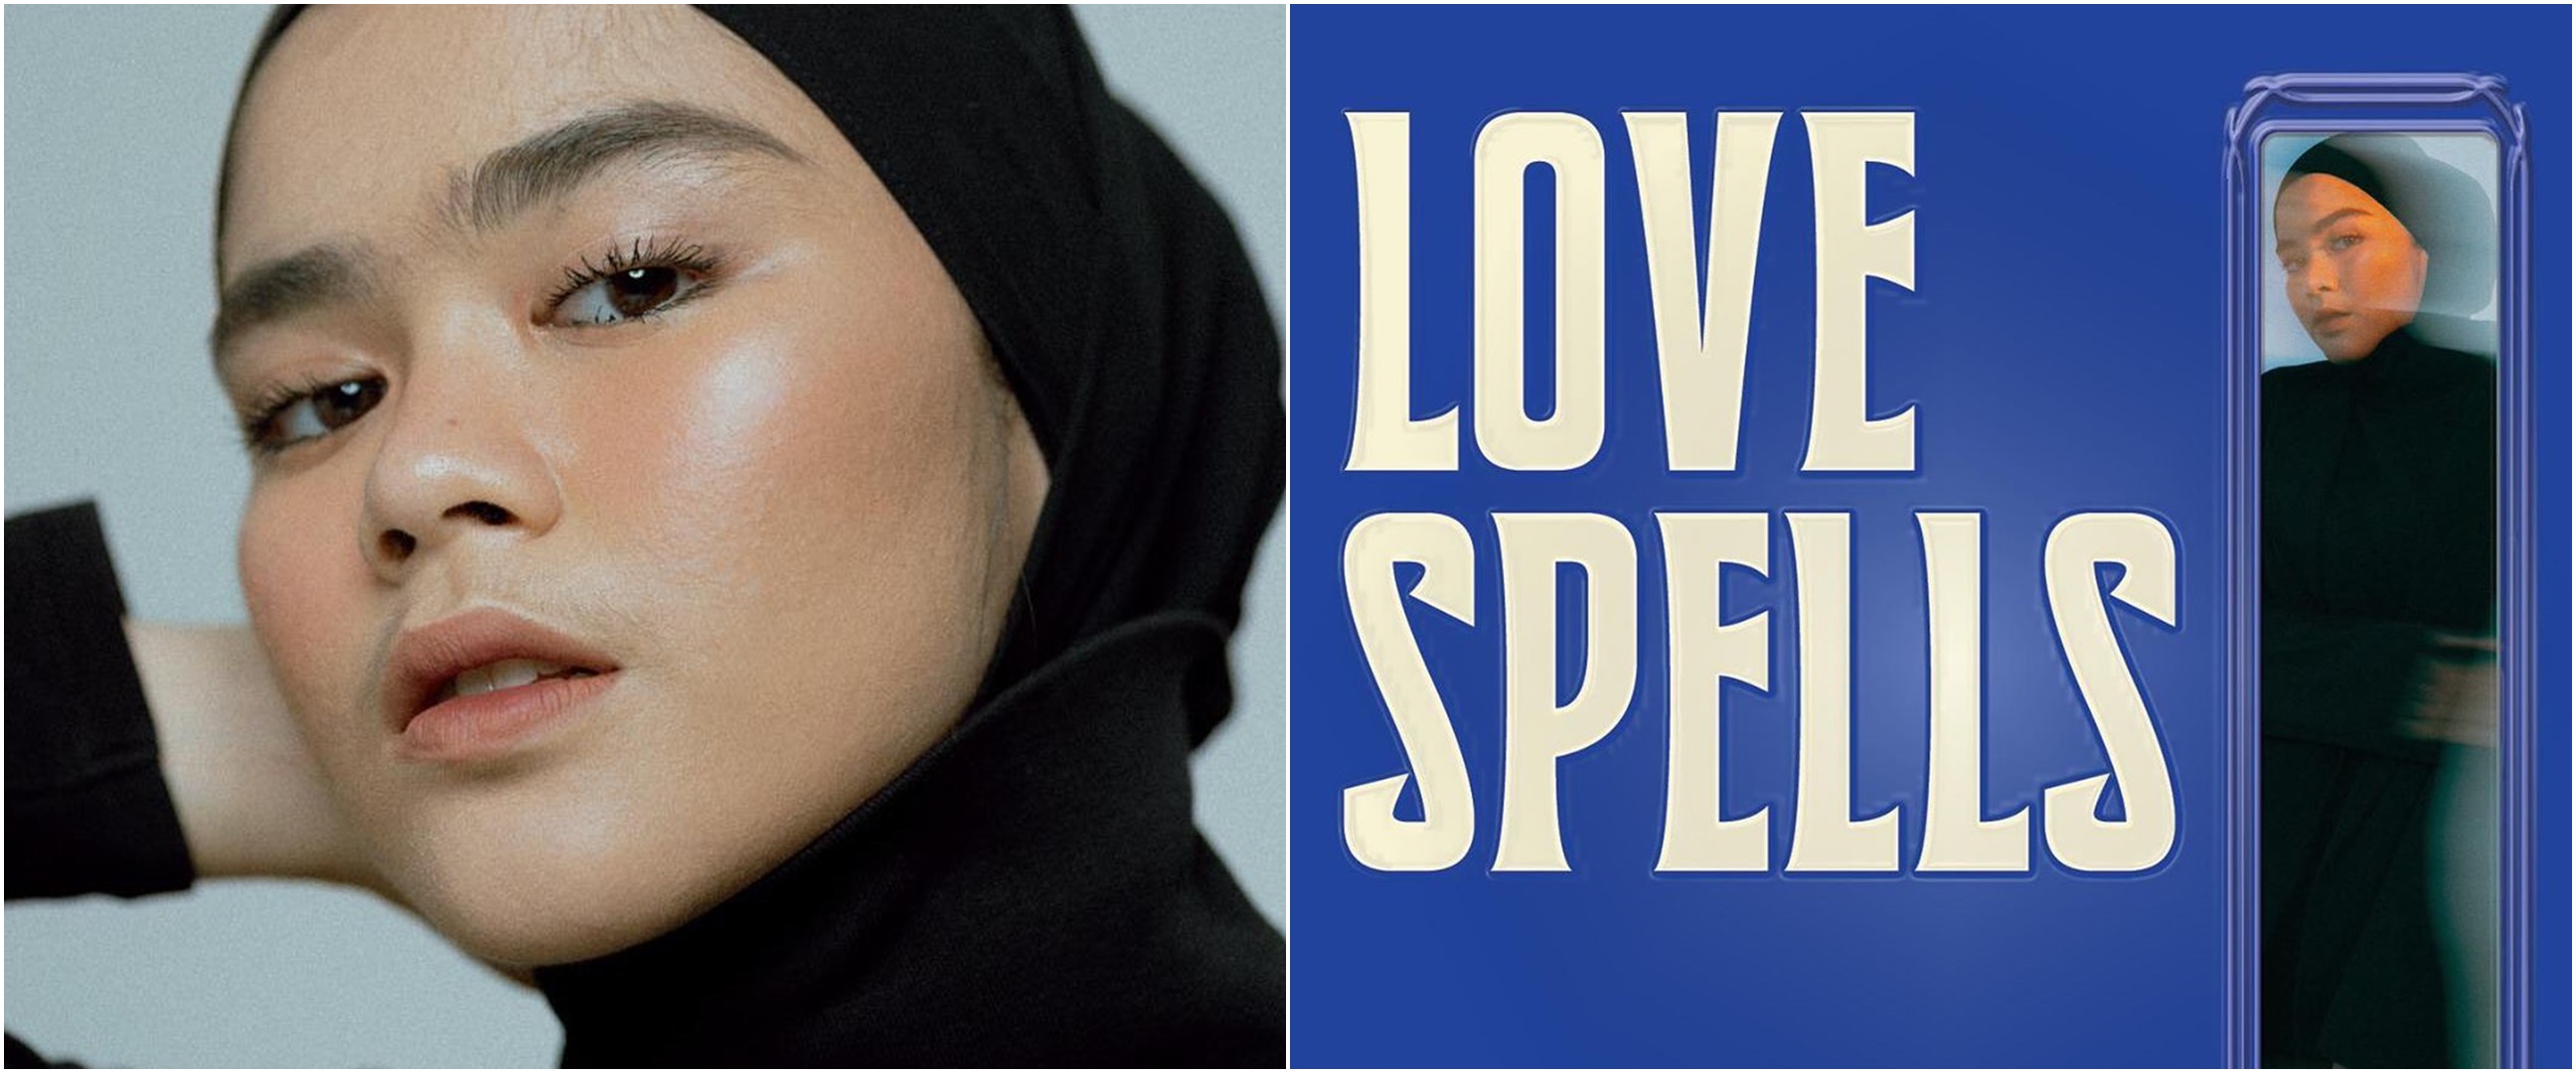 Mengulik "Love Spells", album perdana Sivia kisahkan pendewasaan diri